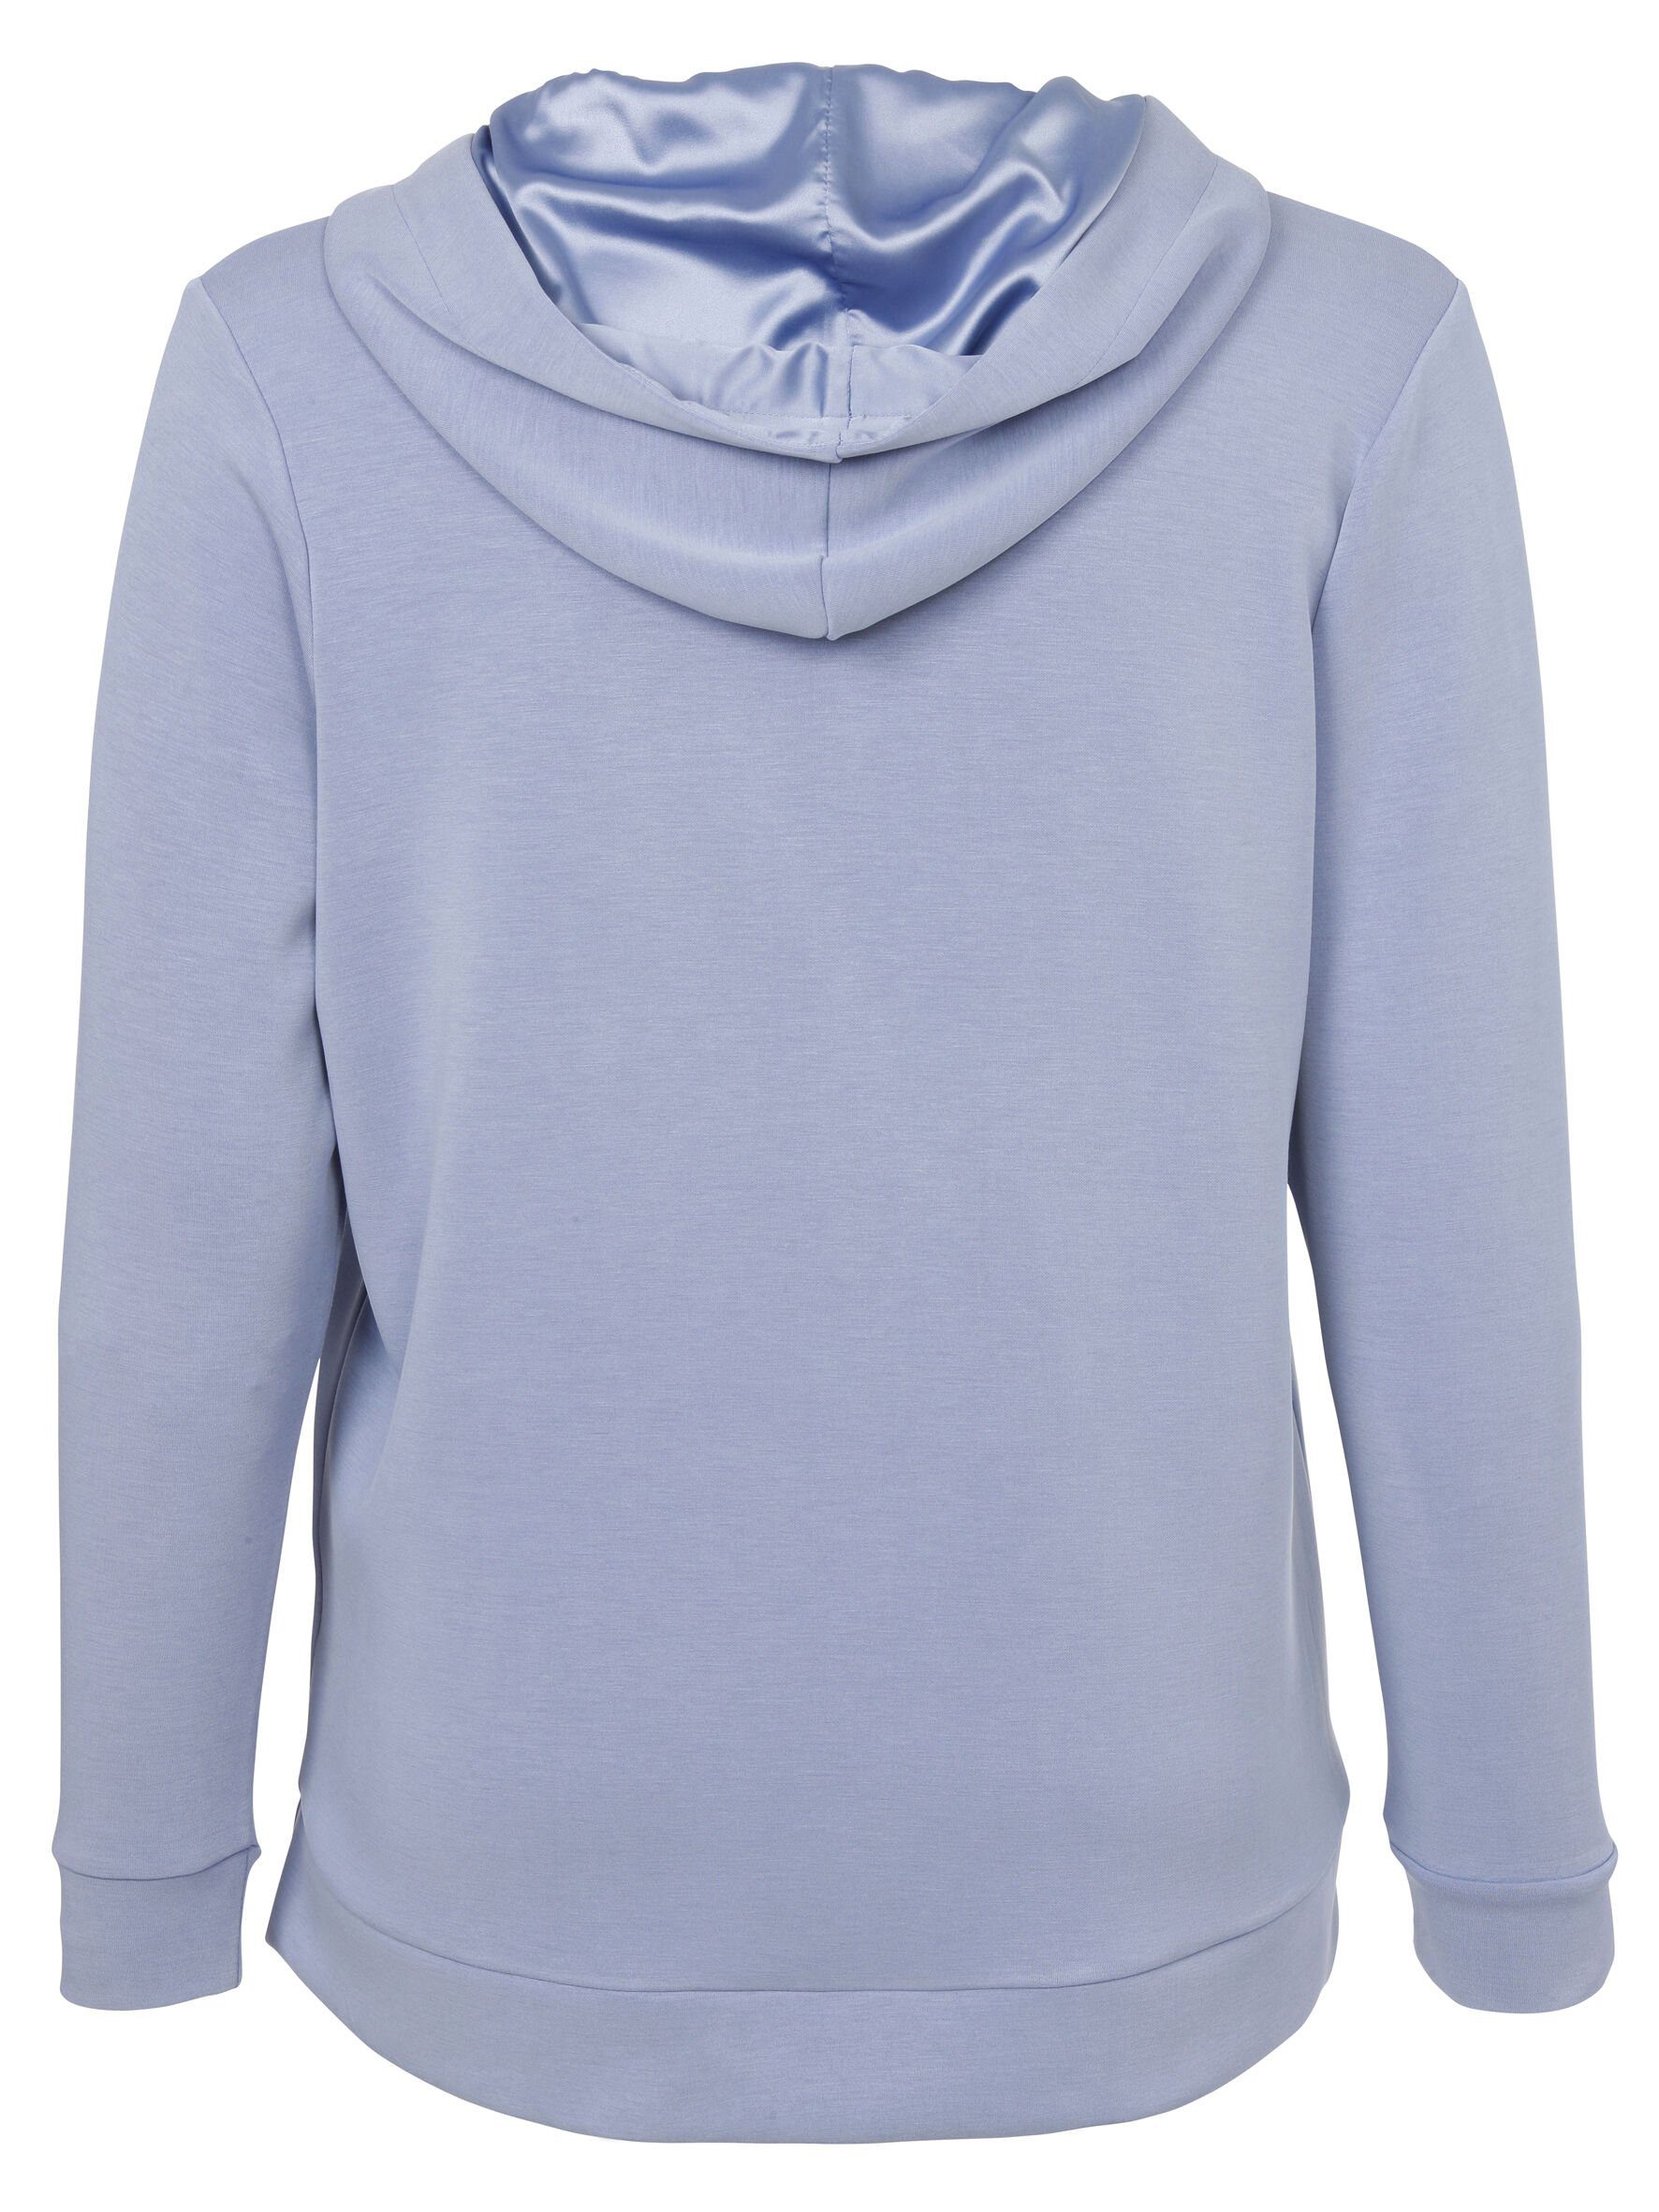 Sweatshirt unifarbenem VIA Sweatshirt DUE in Viskosemischung APPIA Sportives mit hochwertigen rauchblau Stil